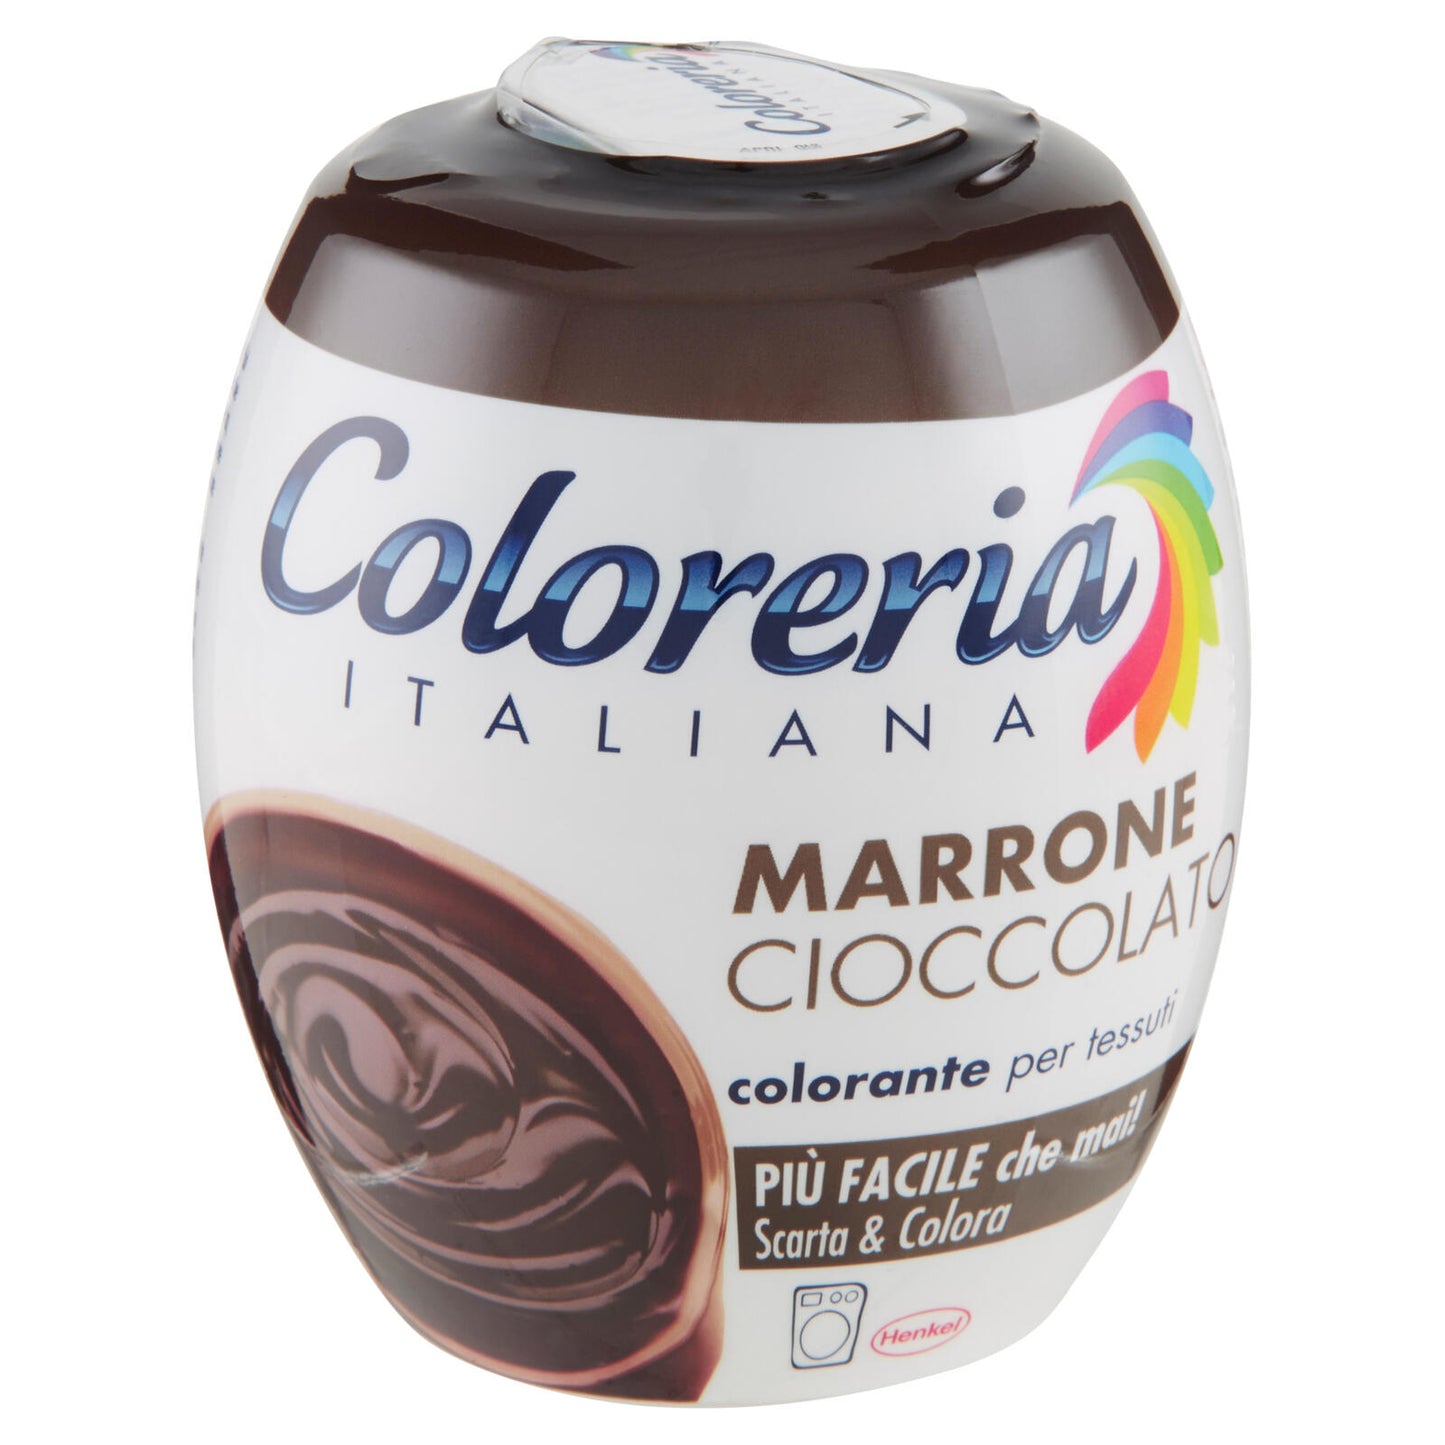 COLORERIA Marrone Cioccolato 350 gr. ->